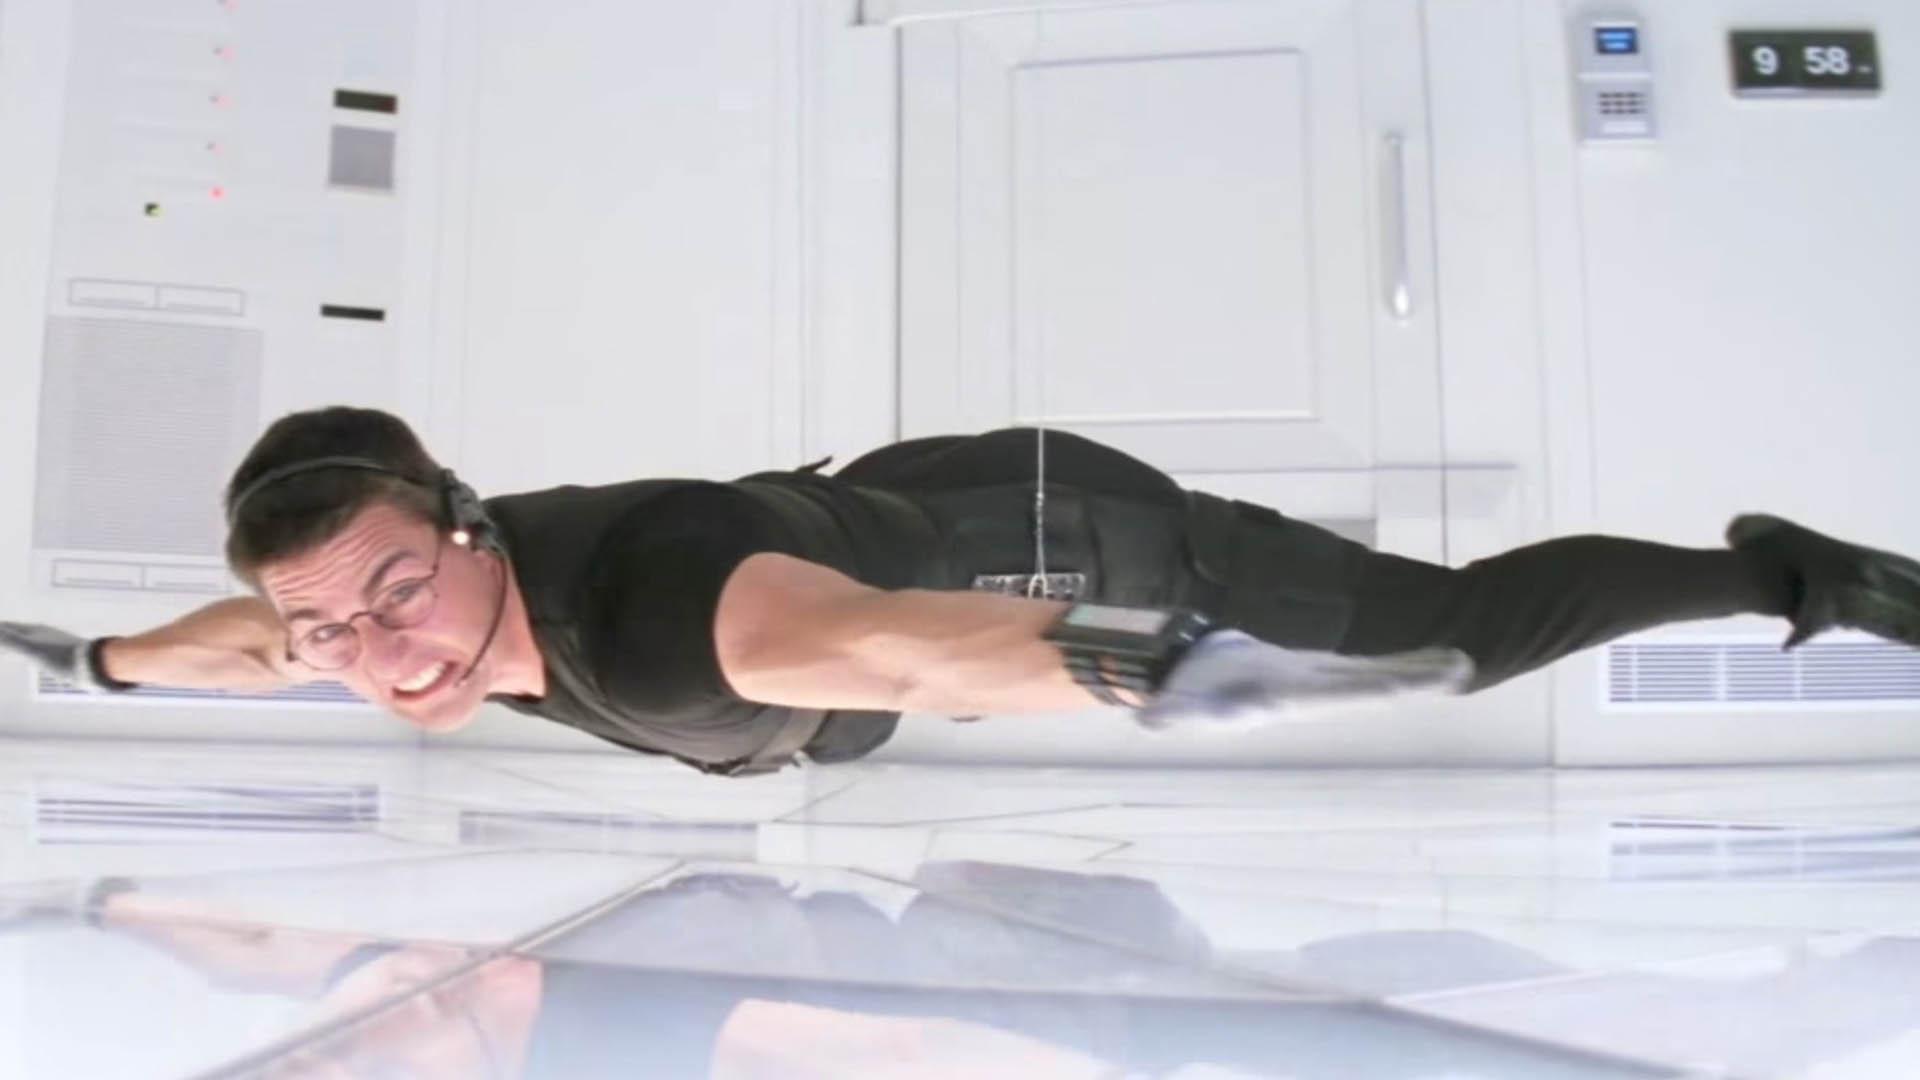 تام کروز در حالت آویزان در یک گاوصندوق هوشمند در فیلم نخست مجموعه Mission impossible